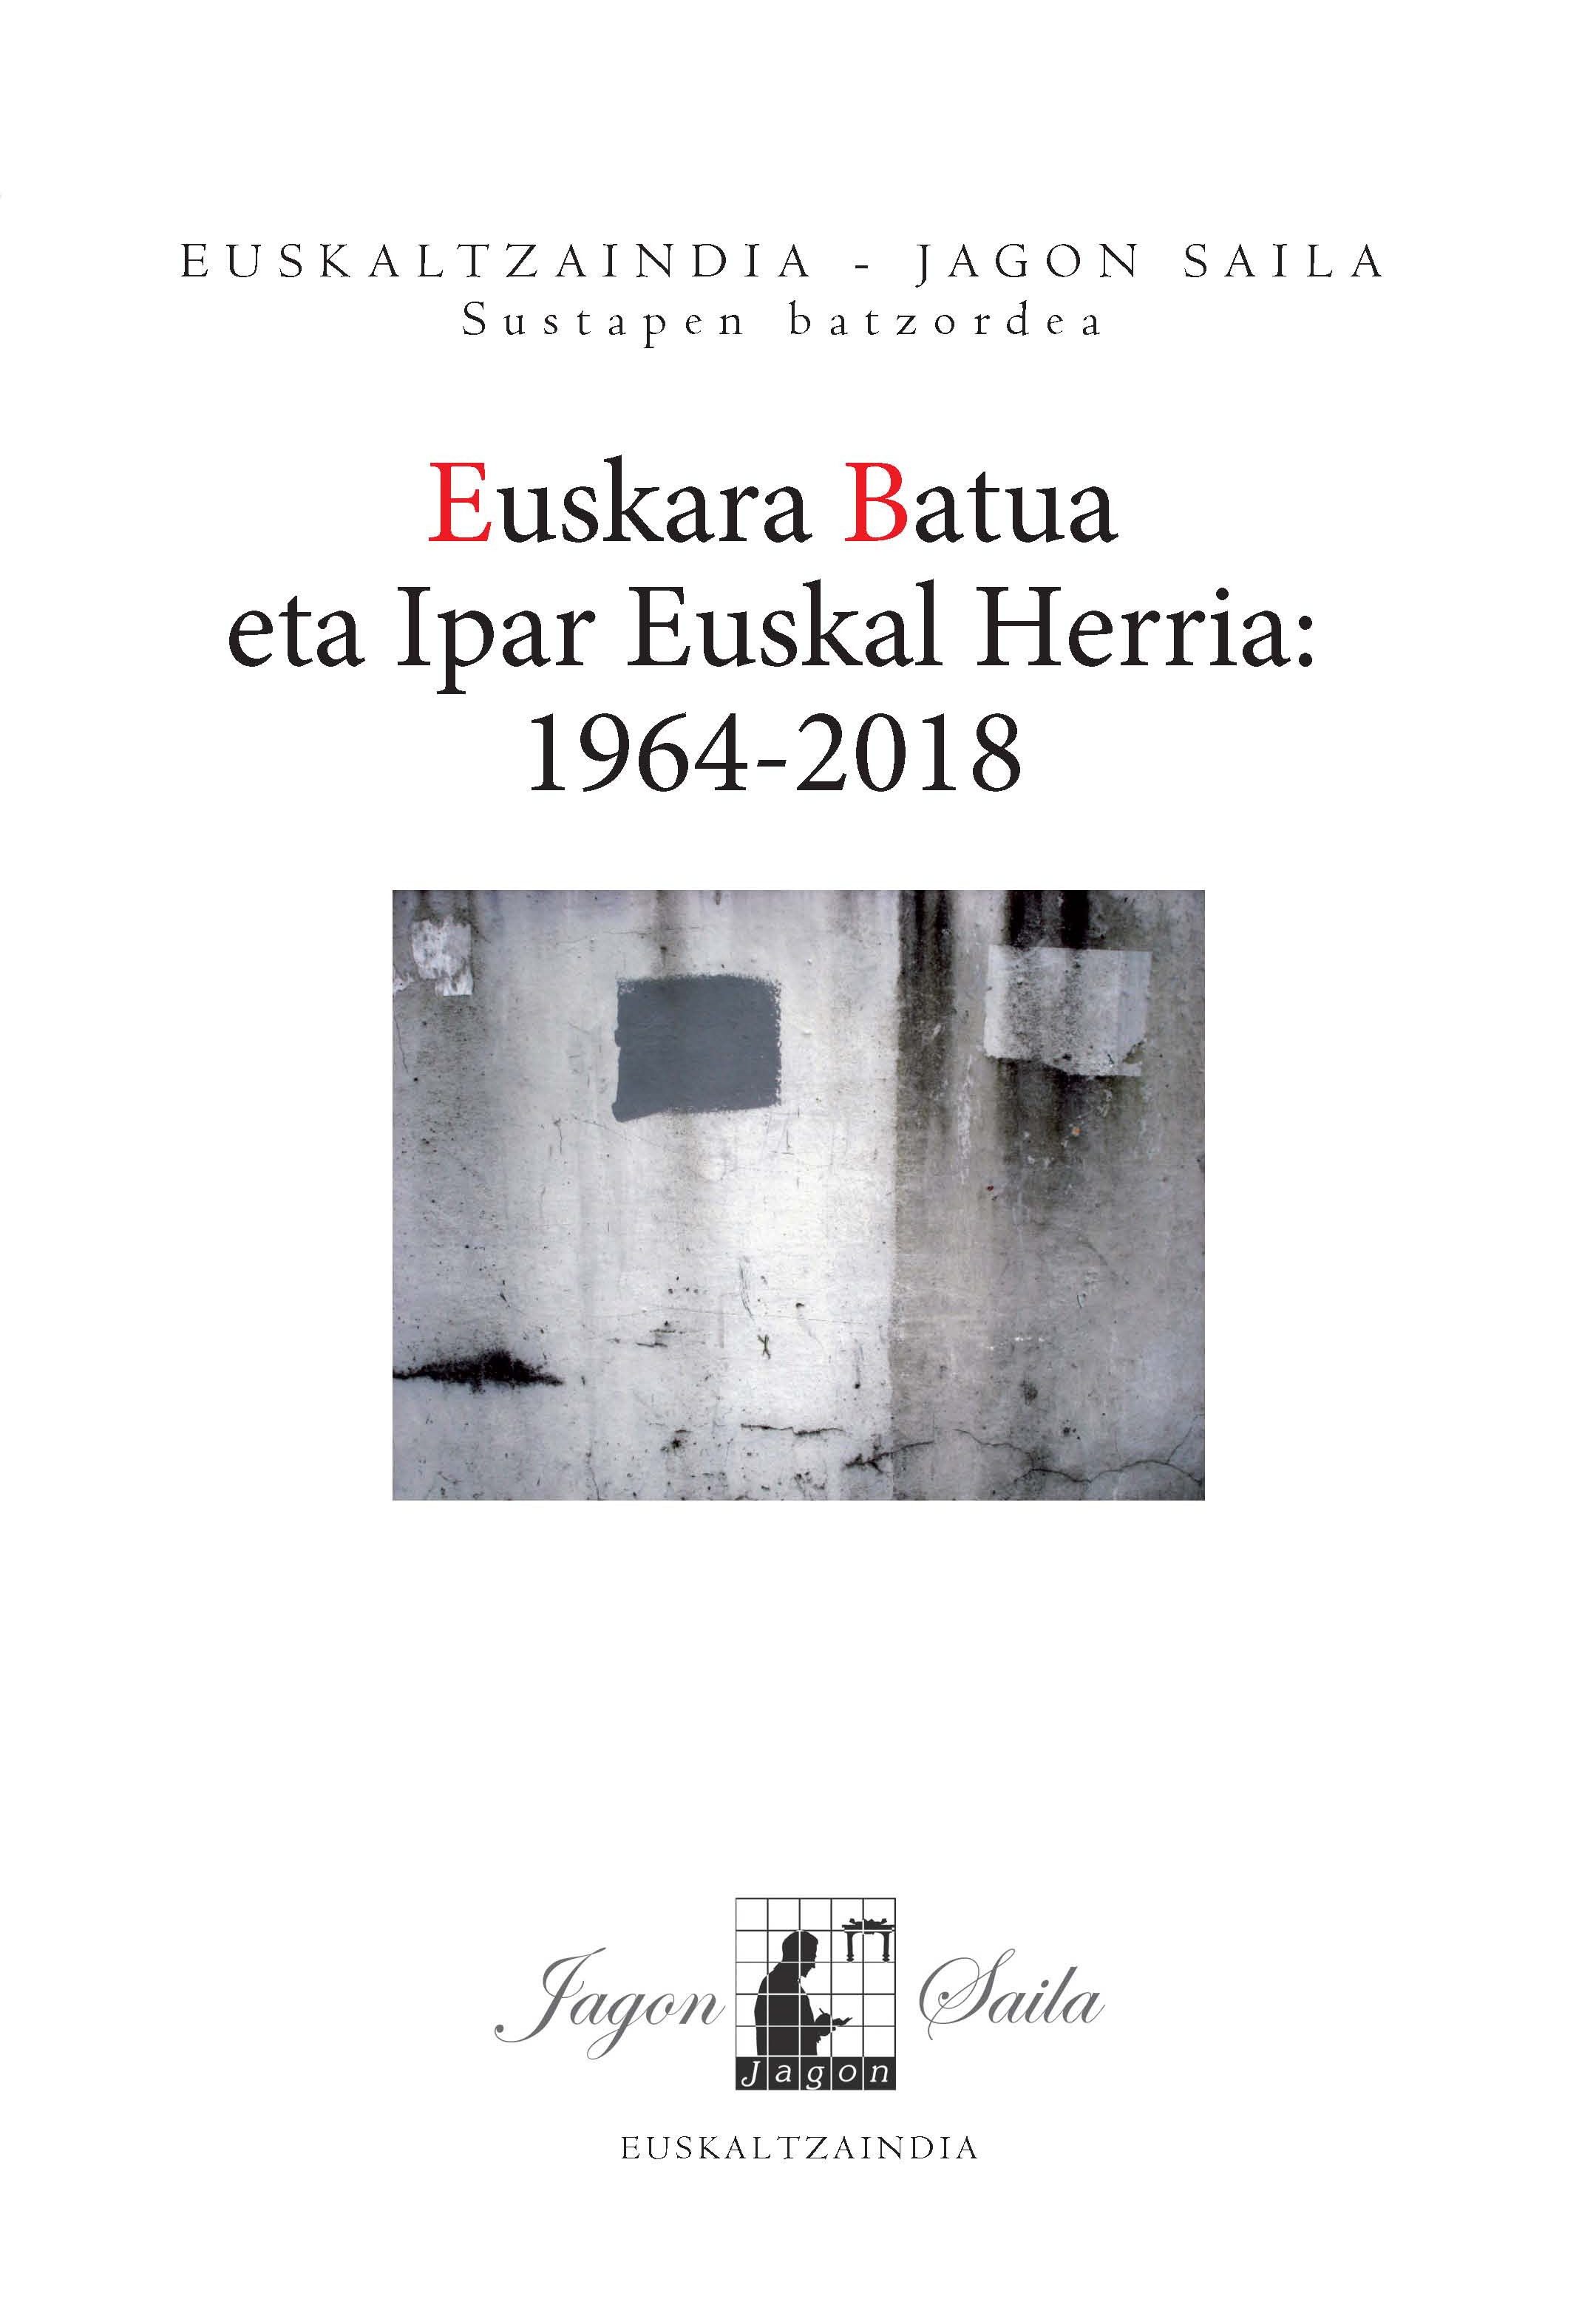 Euskara Batua eta Ipar Euskal Herria (1964-2018)